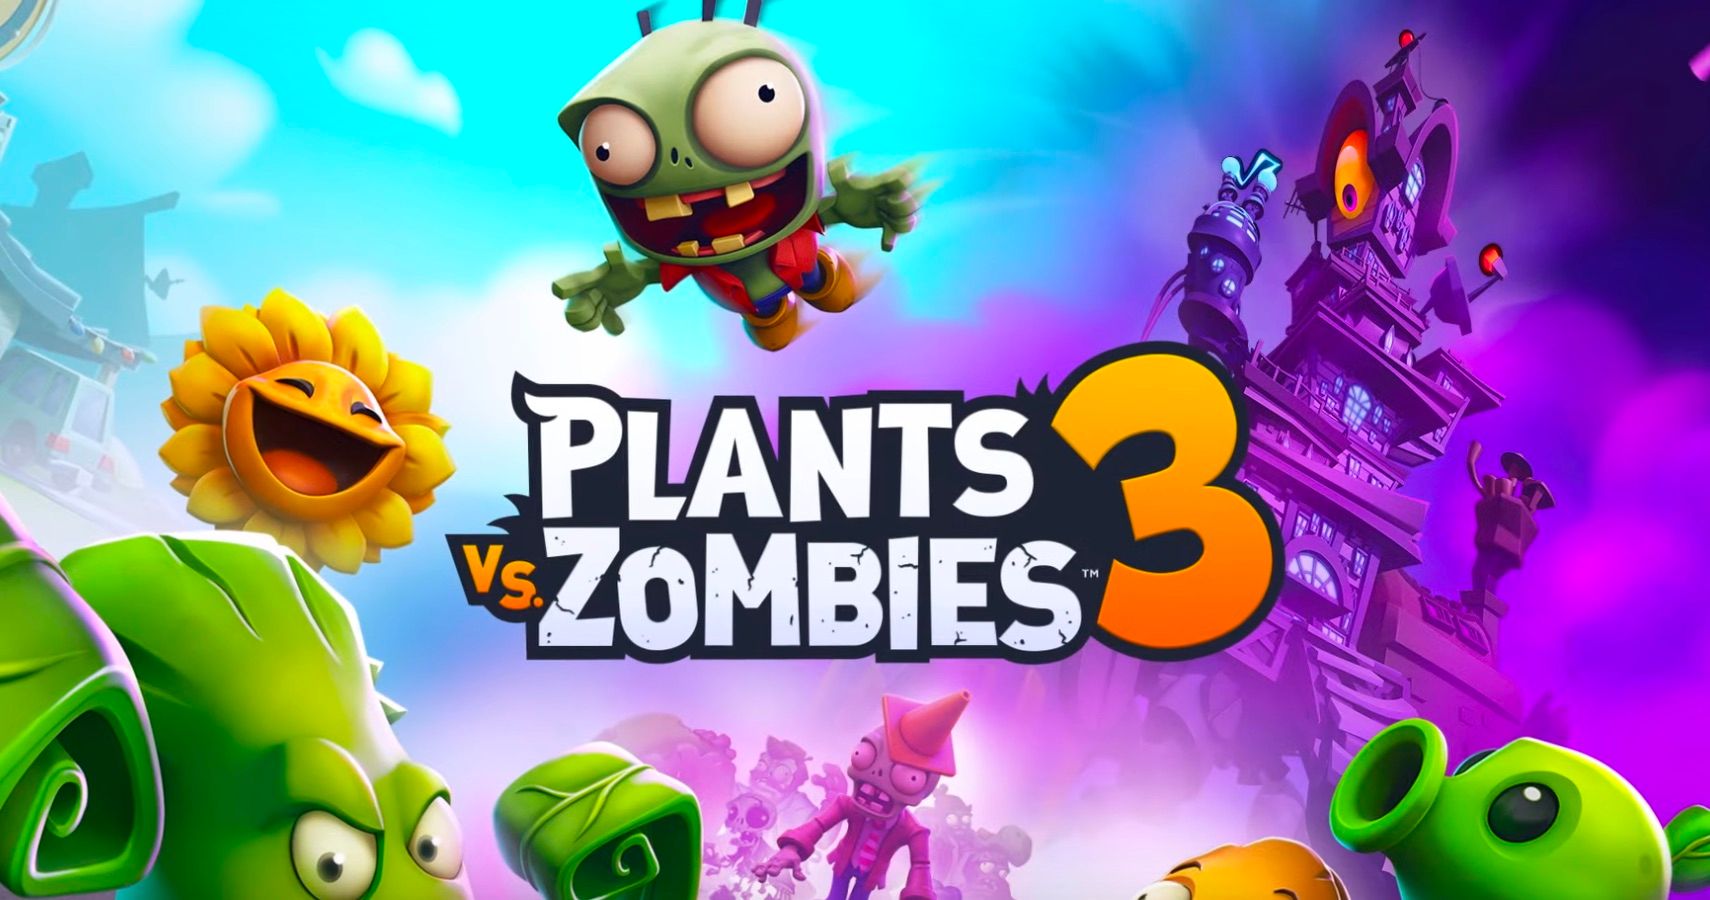 Plant vs zombie